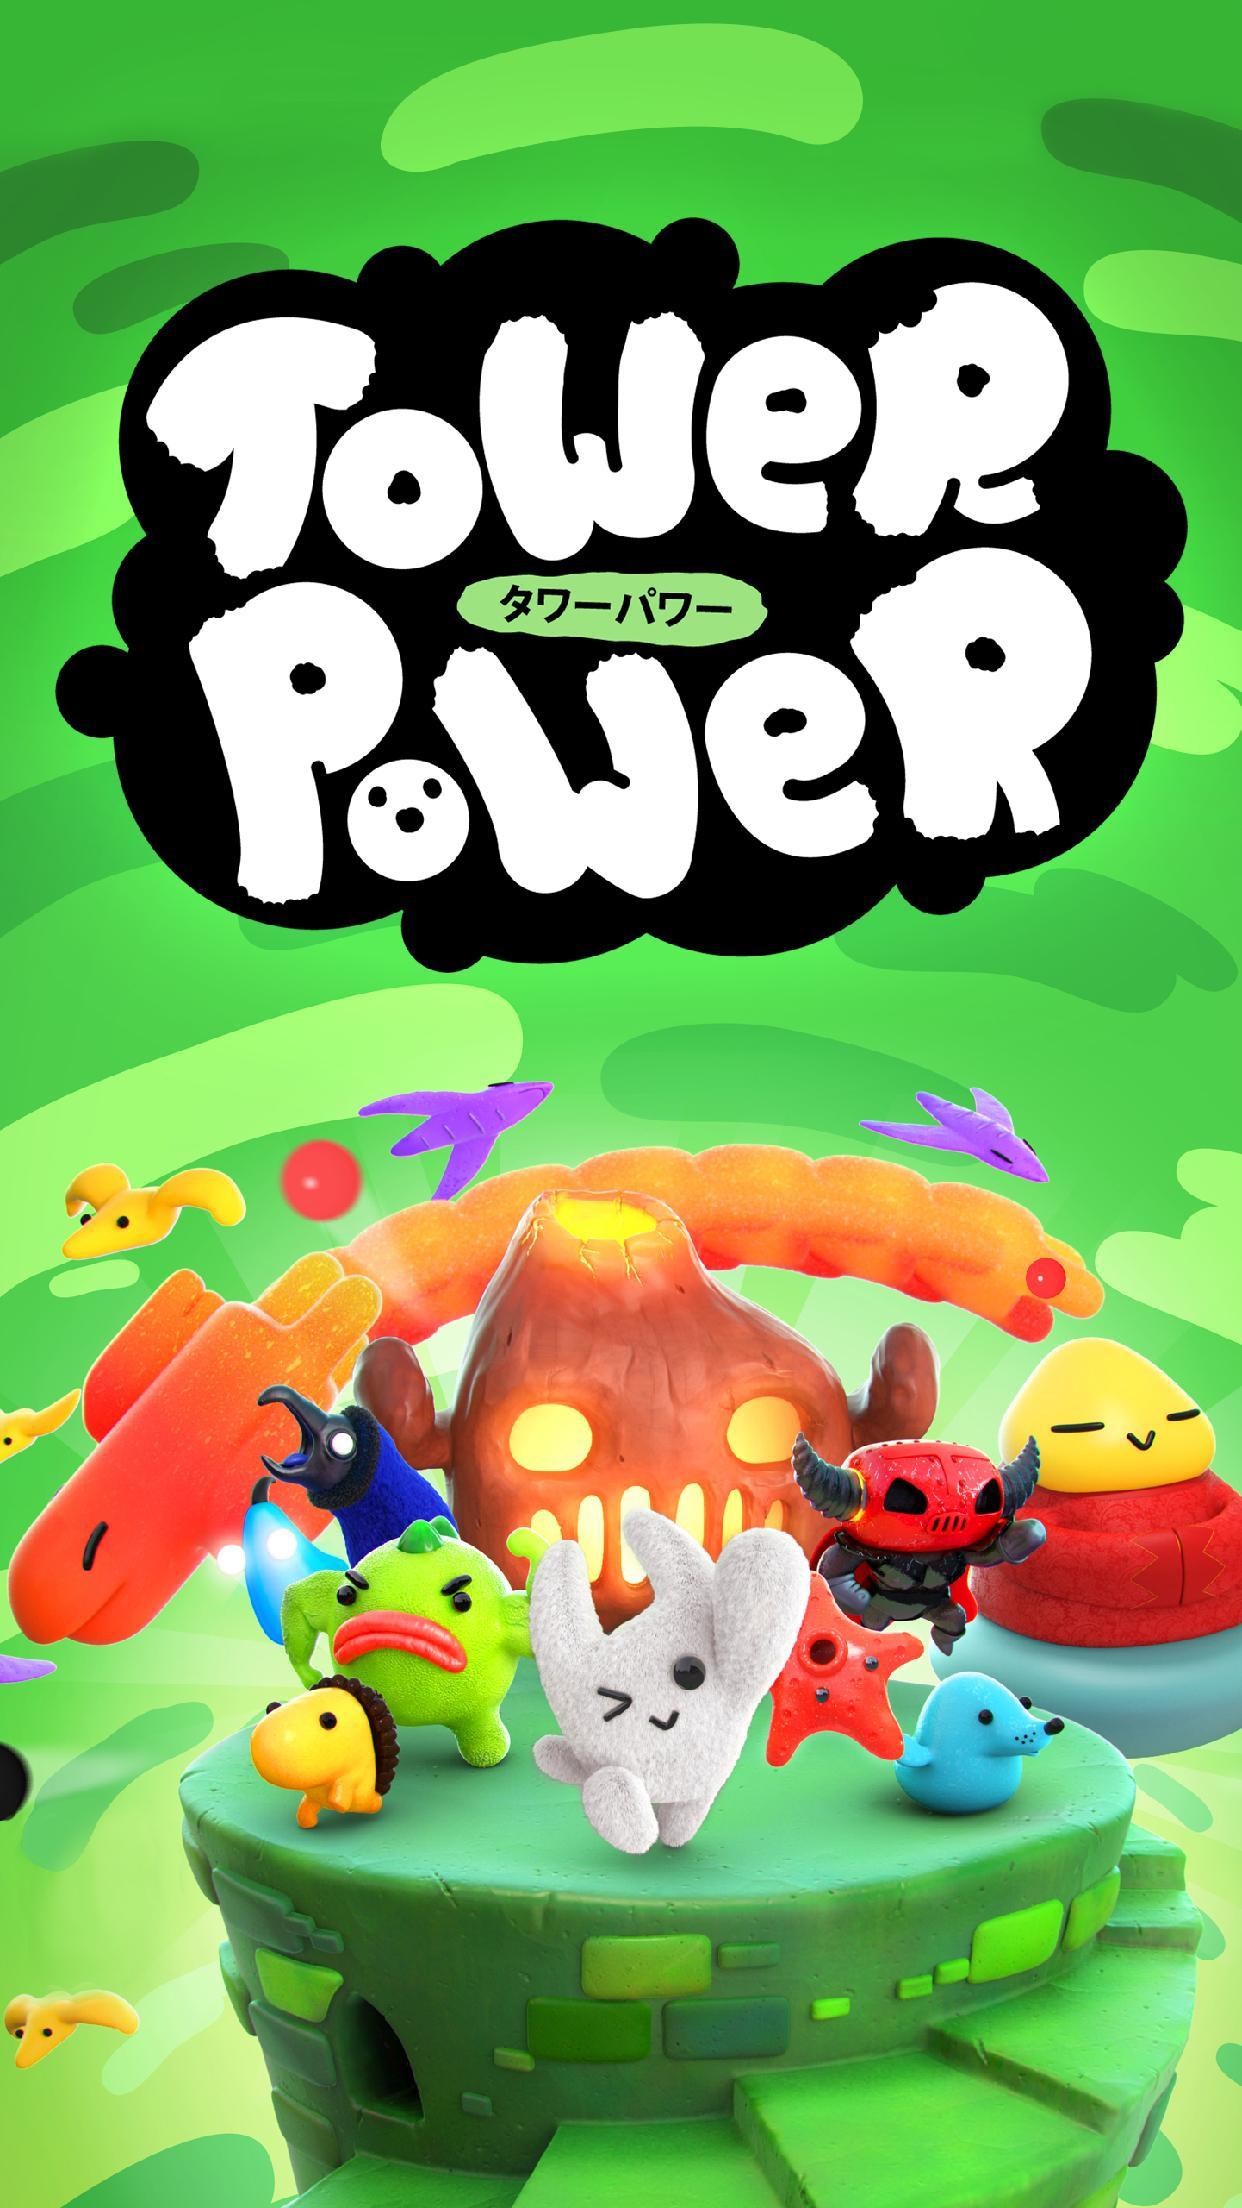 Screenshot 1 of Tower Power (Chưa phát hành) 1.0.0